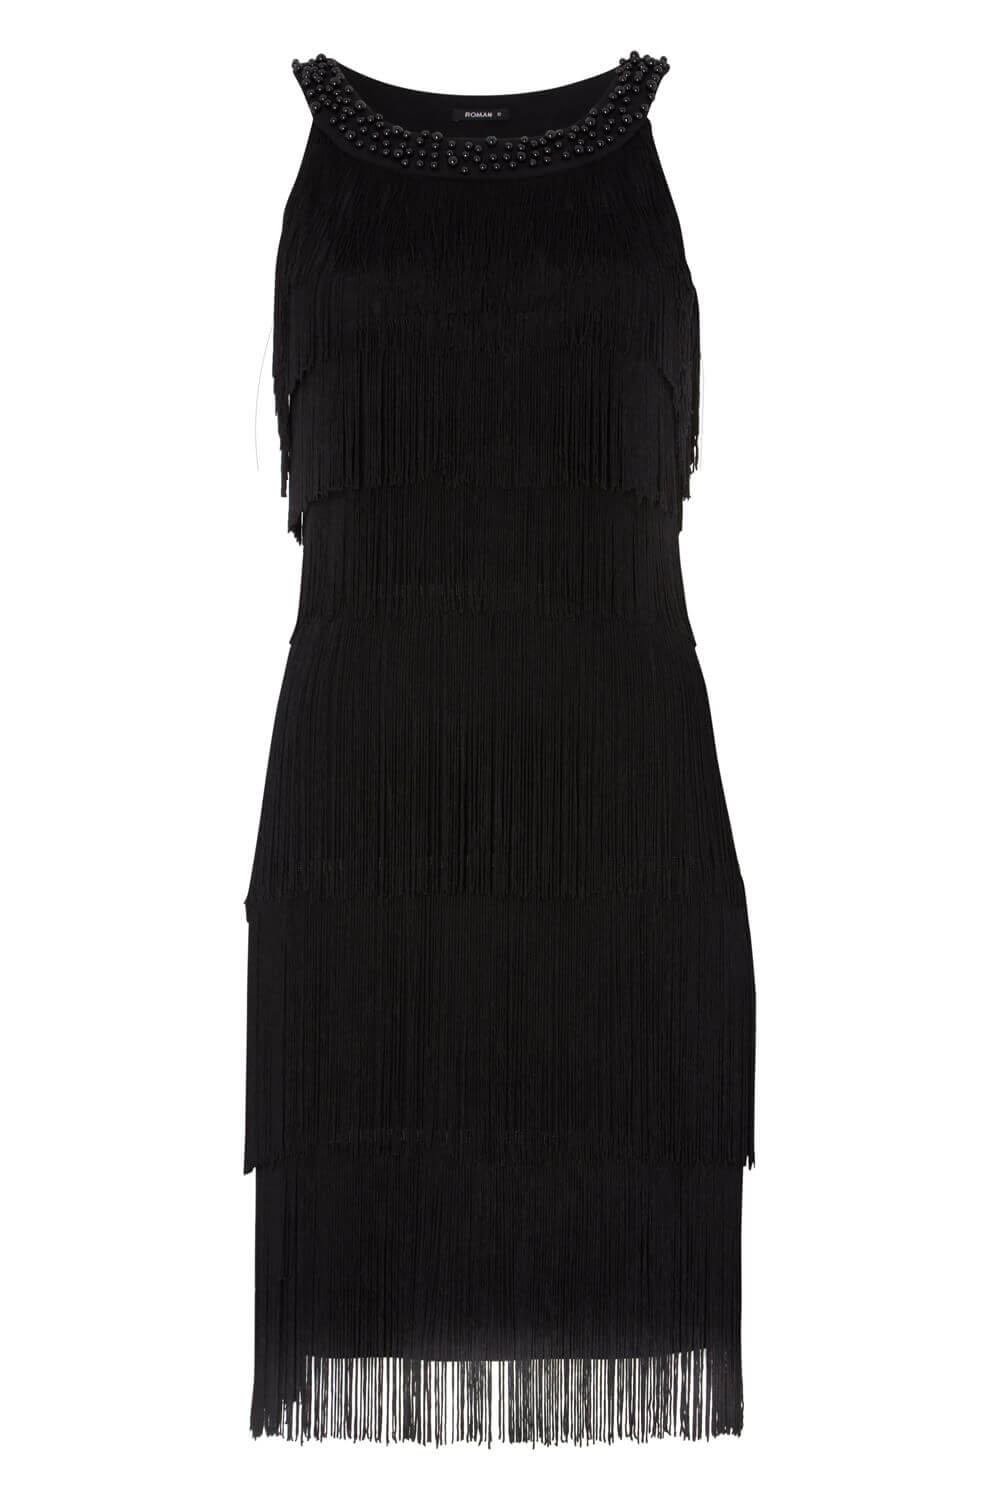 Black Tassel Embellished Flapper Dress, Image 5 of 5